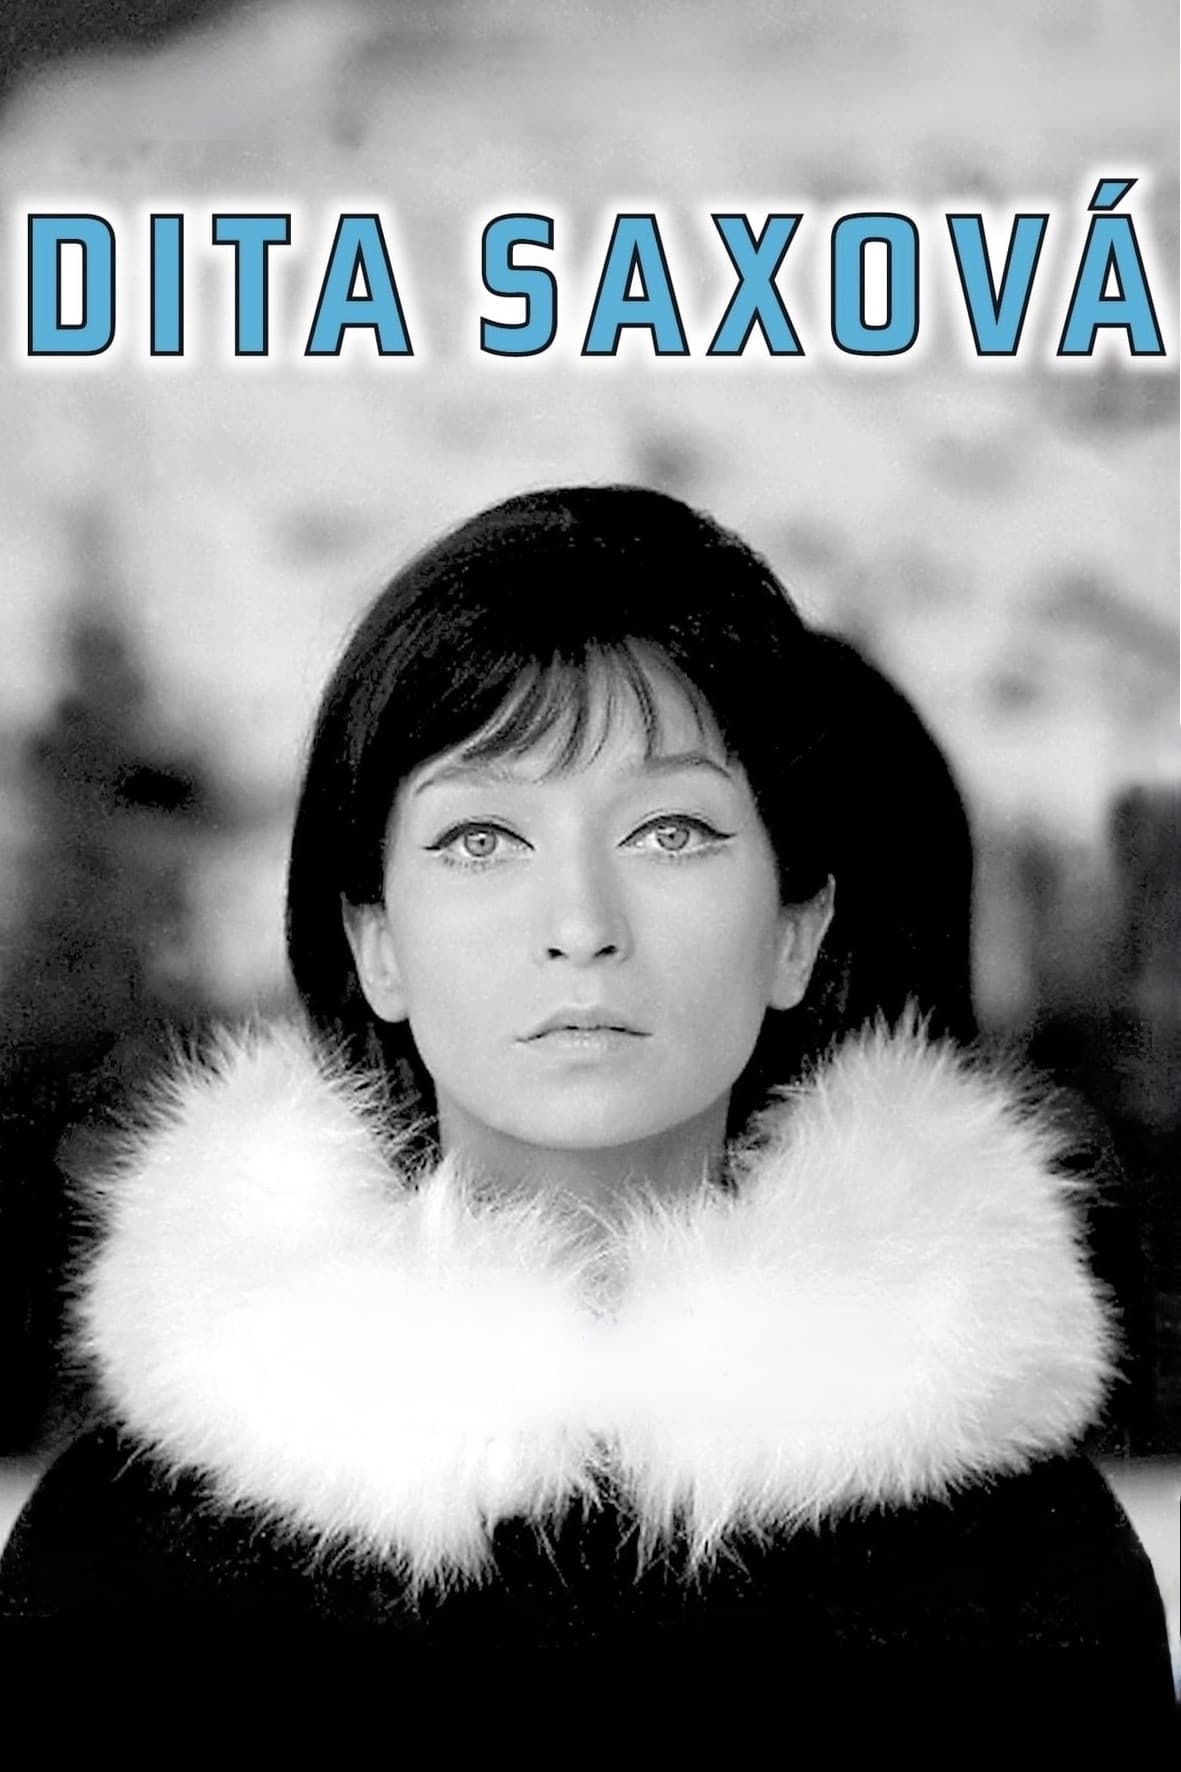 Dita Saxová (1968)